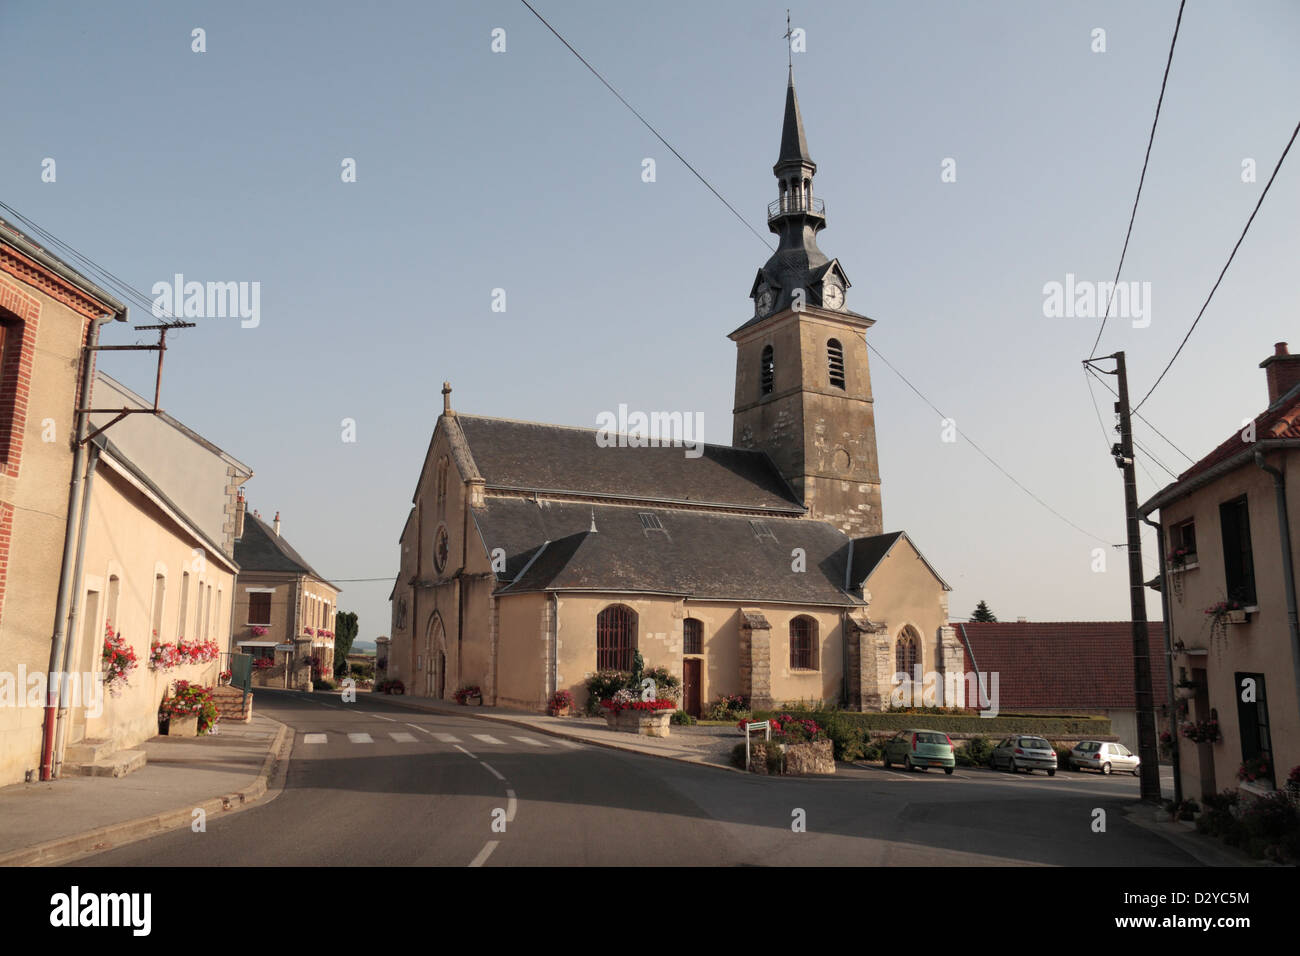 La jolie petite église à Sermiers, Champagne-Ardenne, France. Banque D'Images